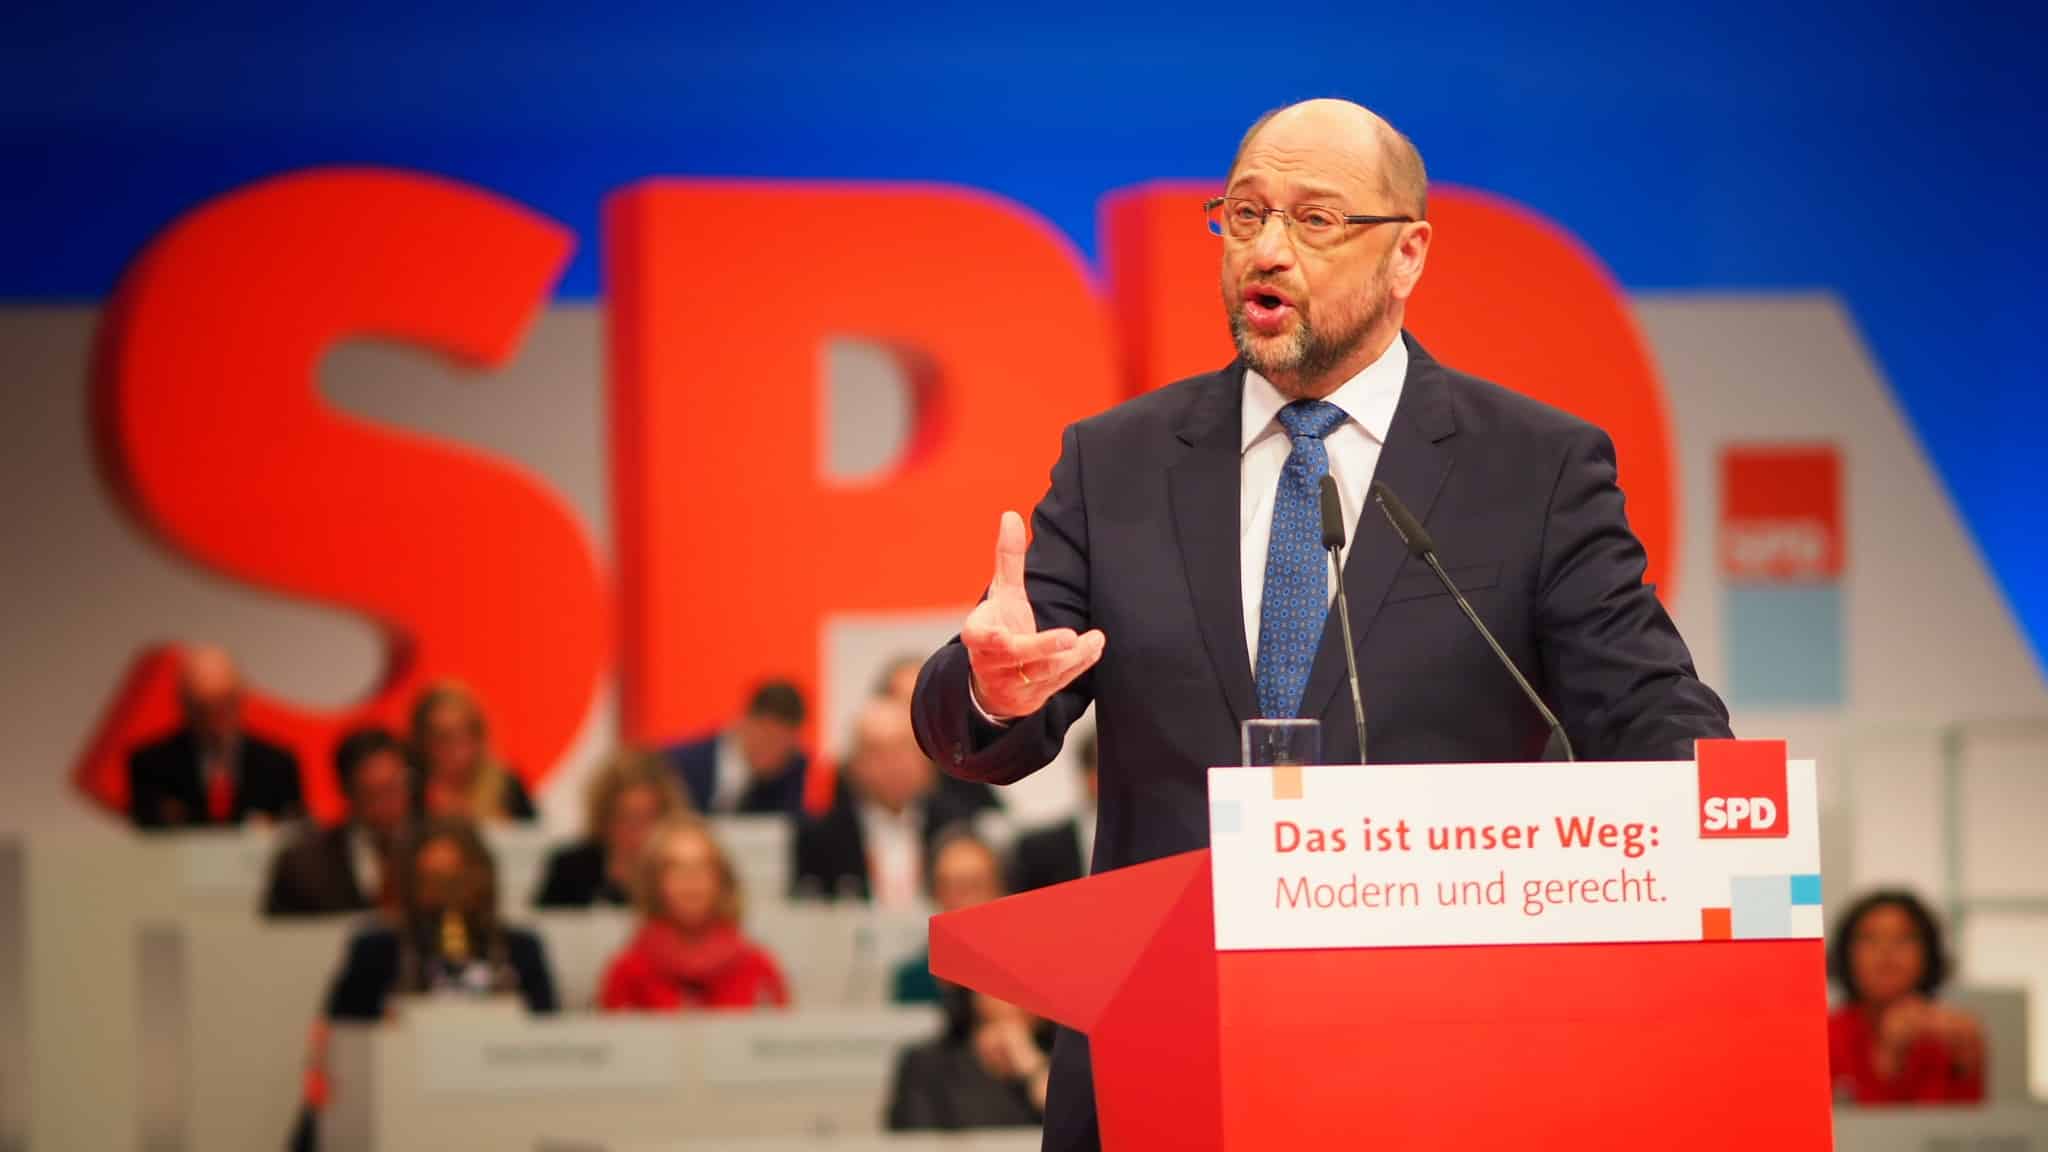 Martin Schulz Foto: SPD Schleswig-Holstein, CC BY 2.0